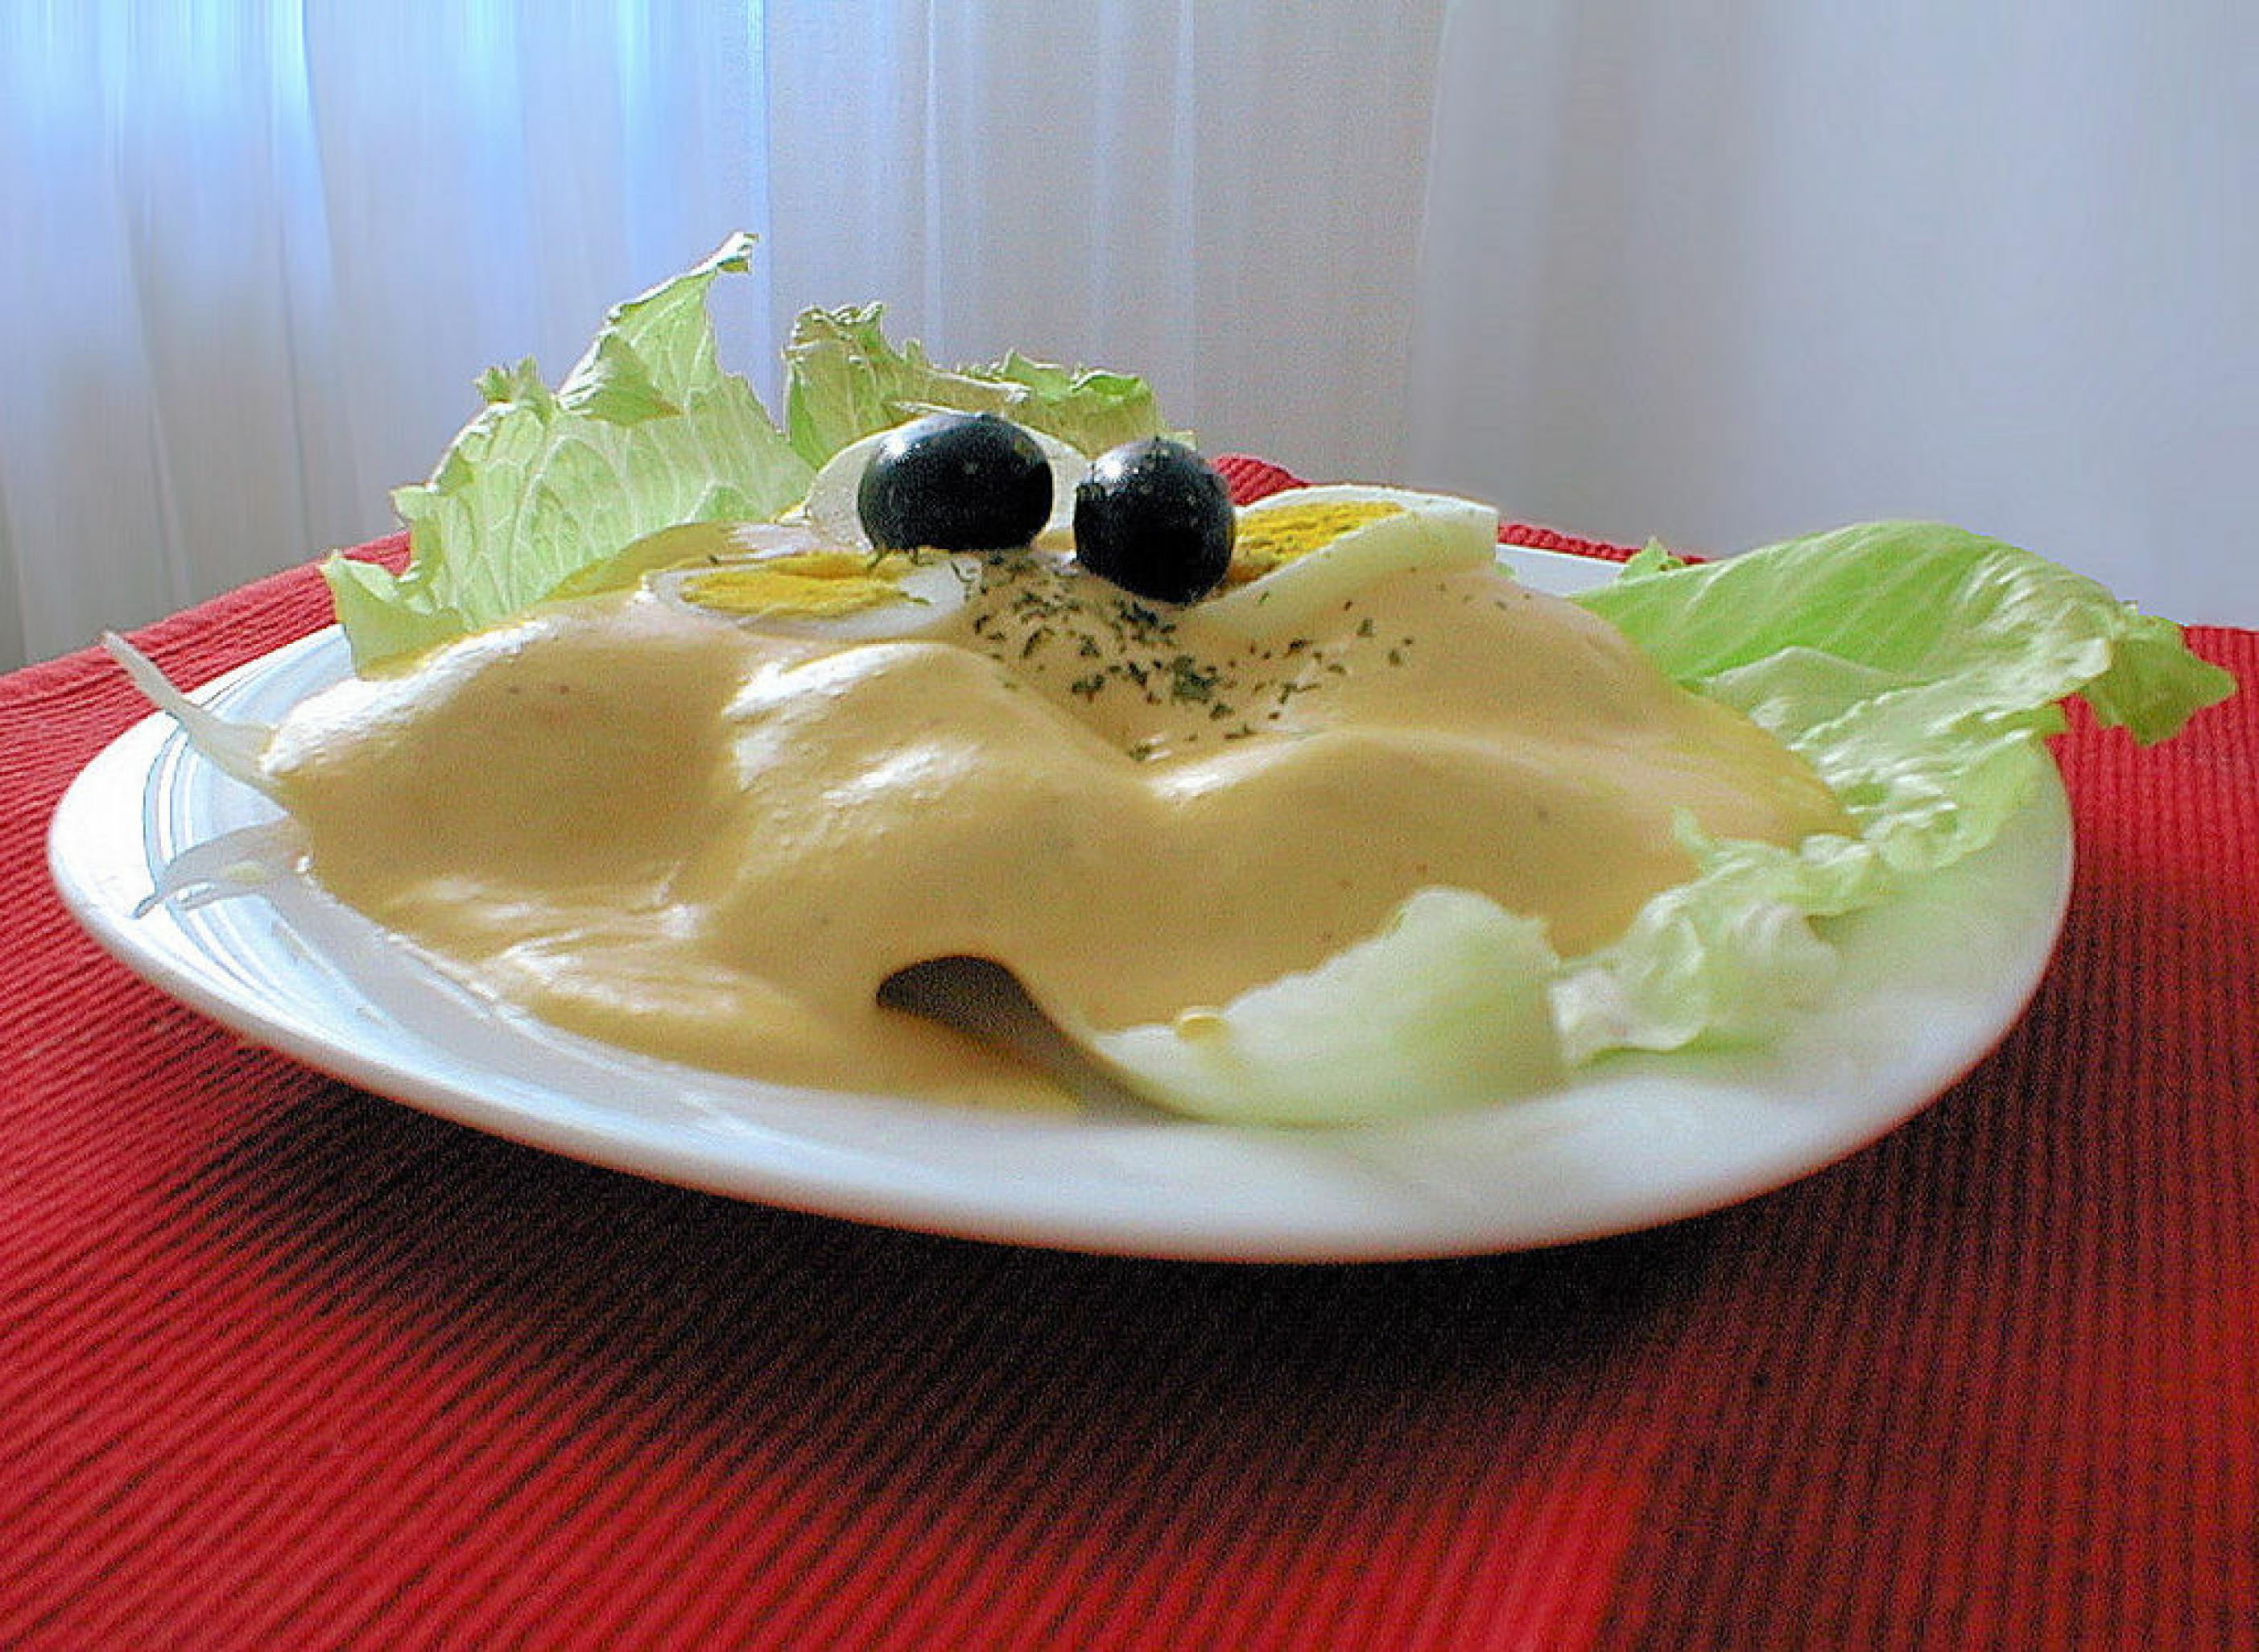 Weißer Teller, darauf Salatblätter, unter einer dicken gelben Soße sieht man die Erhebungen der darunterliegenden Kartoffelscheiben. Obenauf zwei schwarze Oliven und ein Viertel gekochtes Ei.